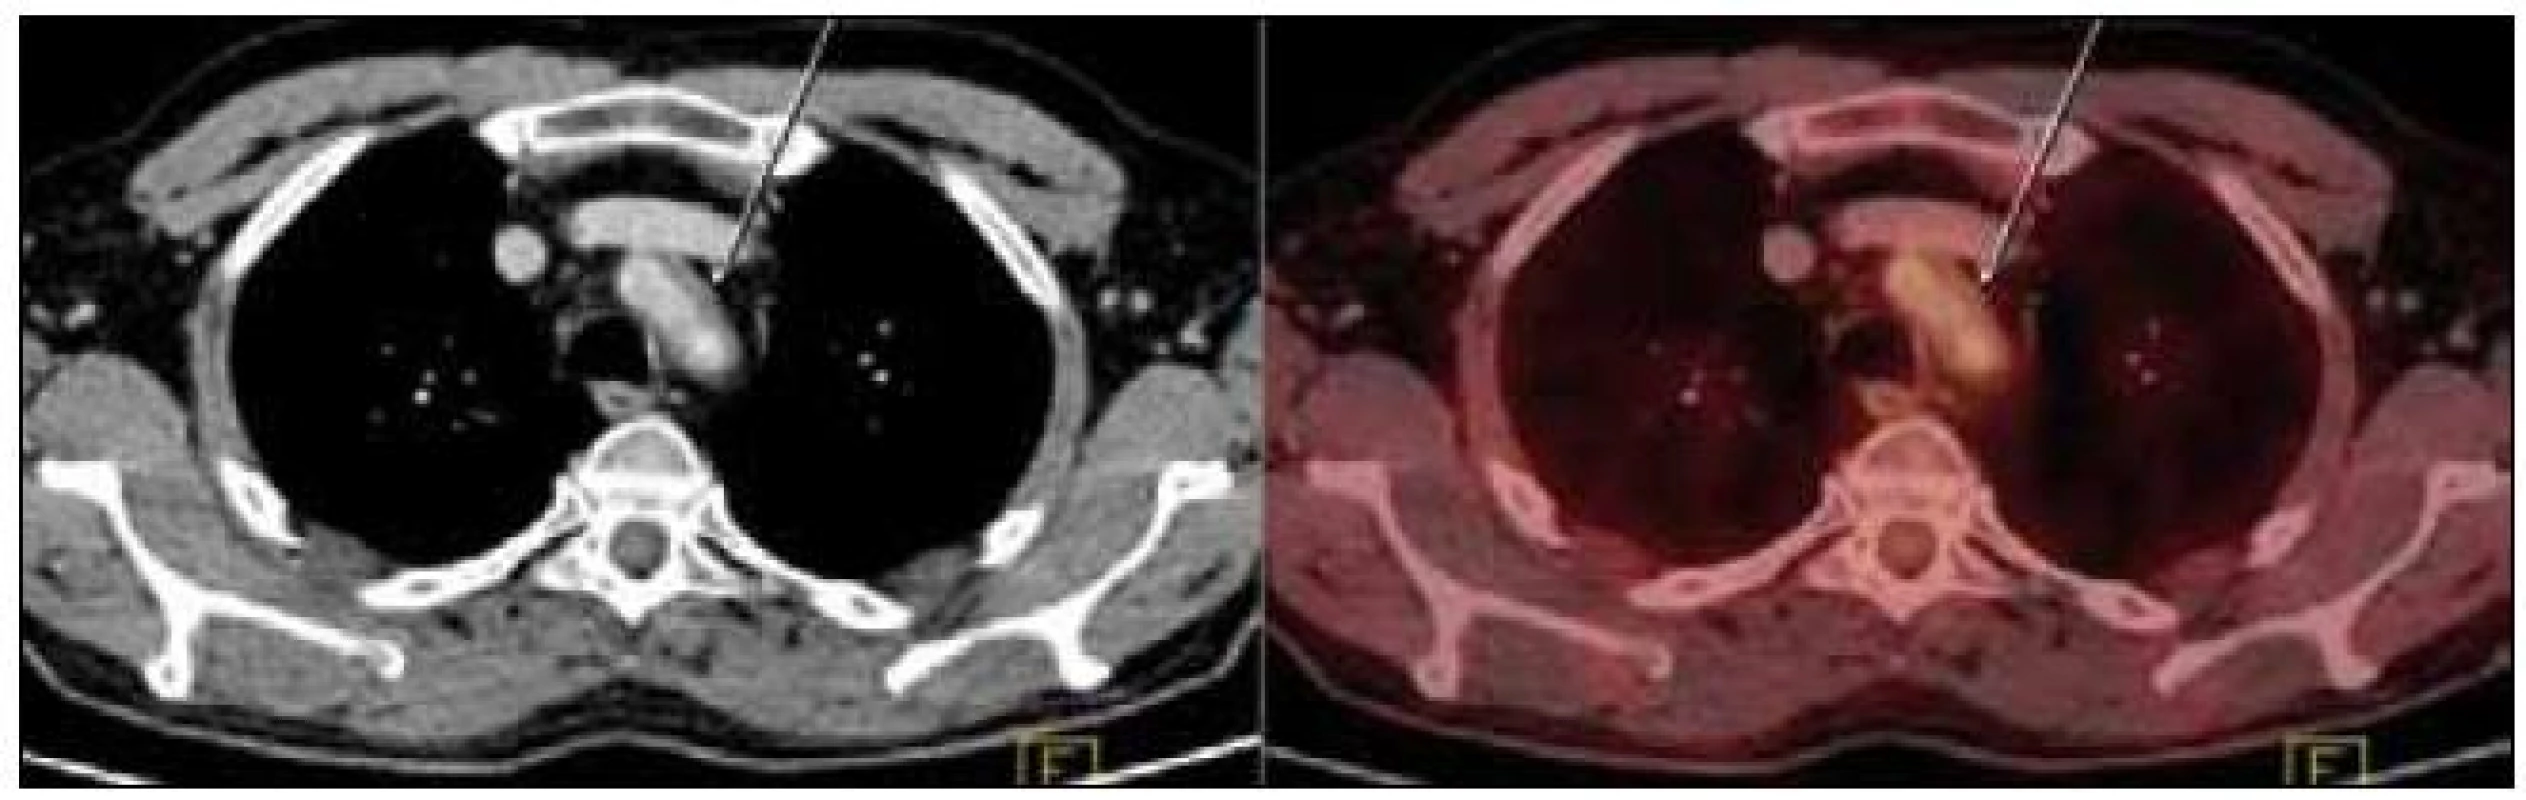 PET-CT zobrazení hrudníku. Zesílení stěny hrudní aorty v úrovni jejího oblouku na šíři 5 mm (označeno šipkami). Evidentní hypermetabolizmus glukózy neprokázán.